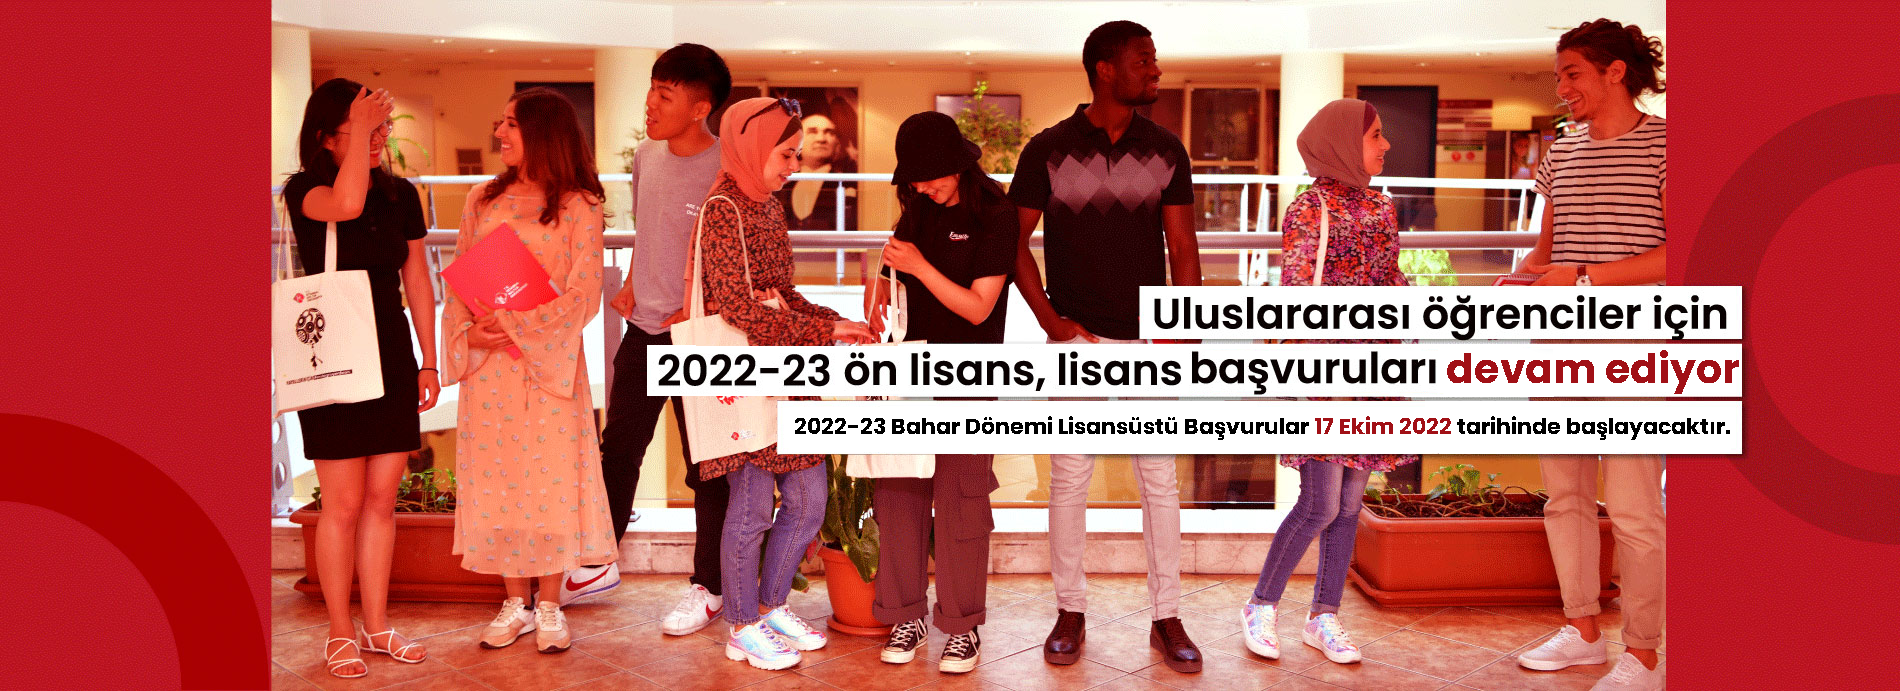 2022-2023 Uluslararası Öğrenci Başvuruları